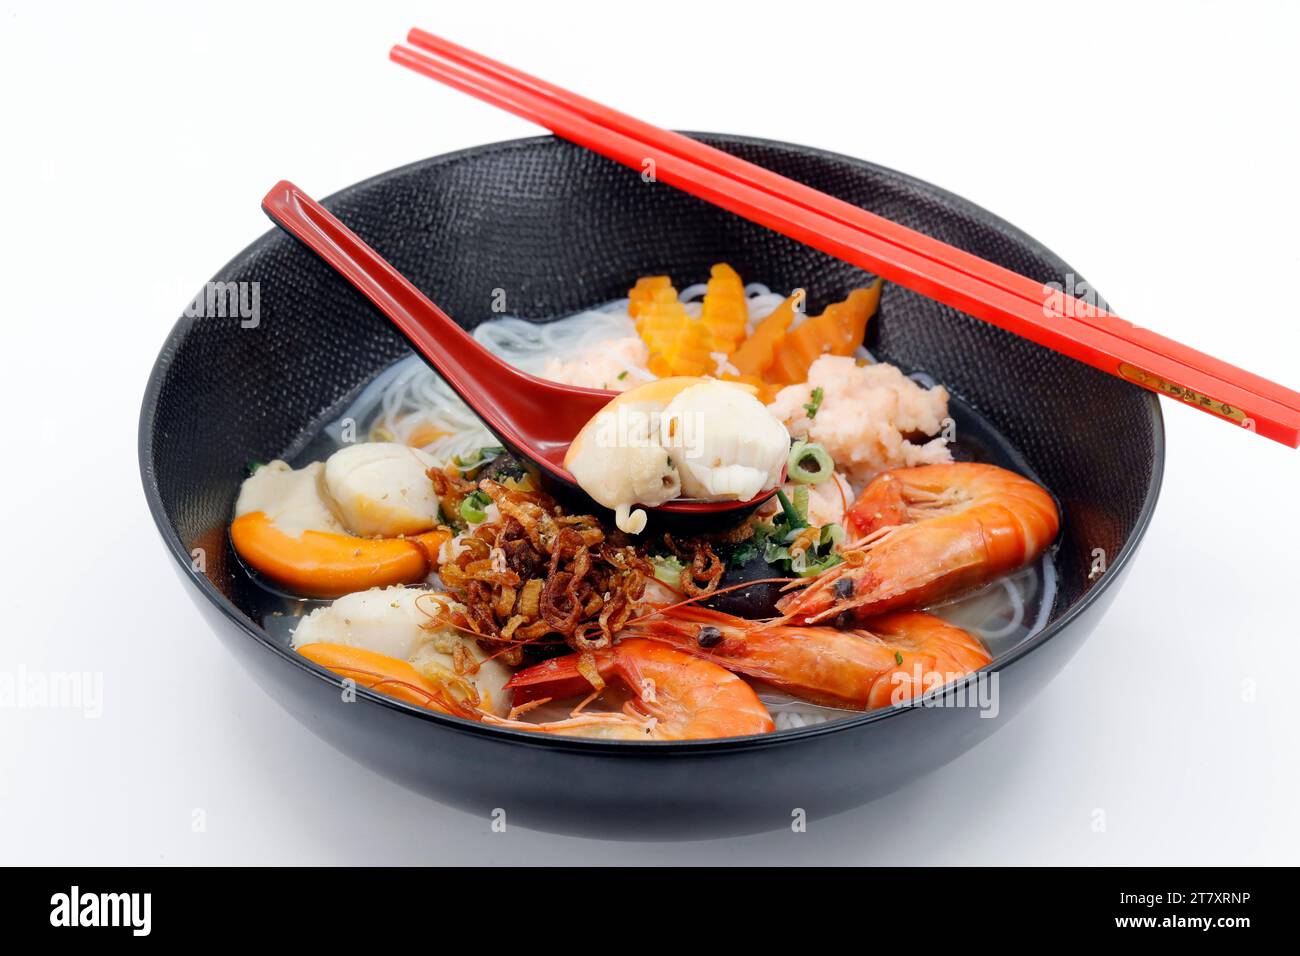 Fruits de mer frais, soupe vietnamienne servie dans un bol noir, cuisine asiatique, France, Europe Banque D'Images